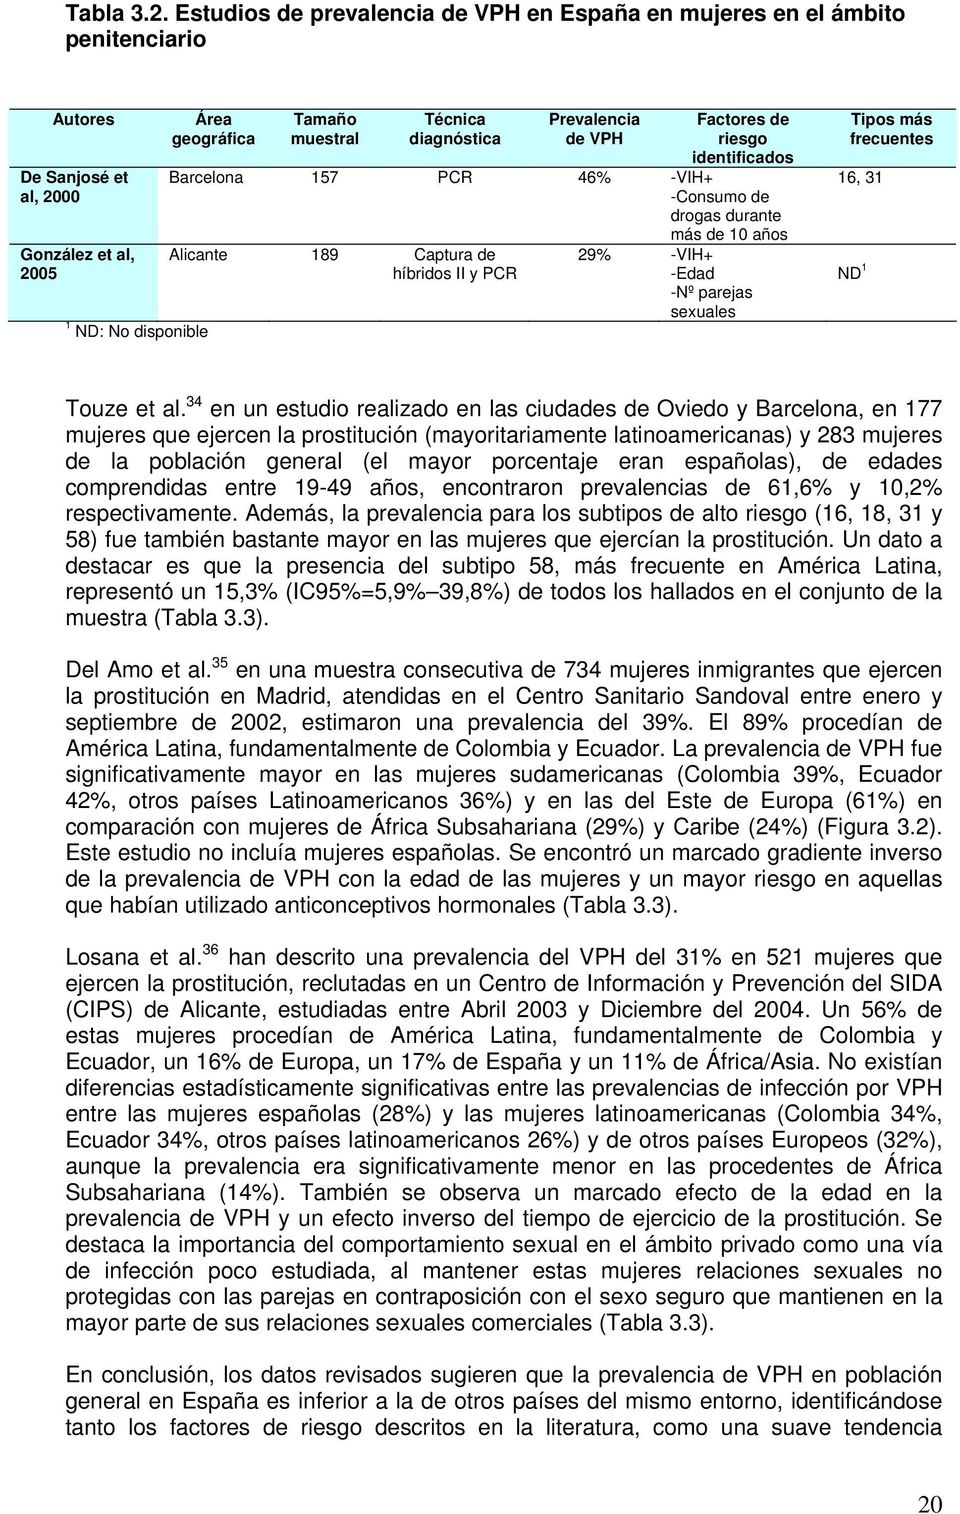 diagnóstica Prevalencia de VPH Factores de riesgo identificados Barcelona 157 PCR 46% -VIH+ -Consumo de drogas durante más de 10 años Alicante 189 Captura de híbridos II y PCR 29% -VIH+ -Edad -Nº